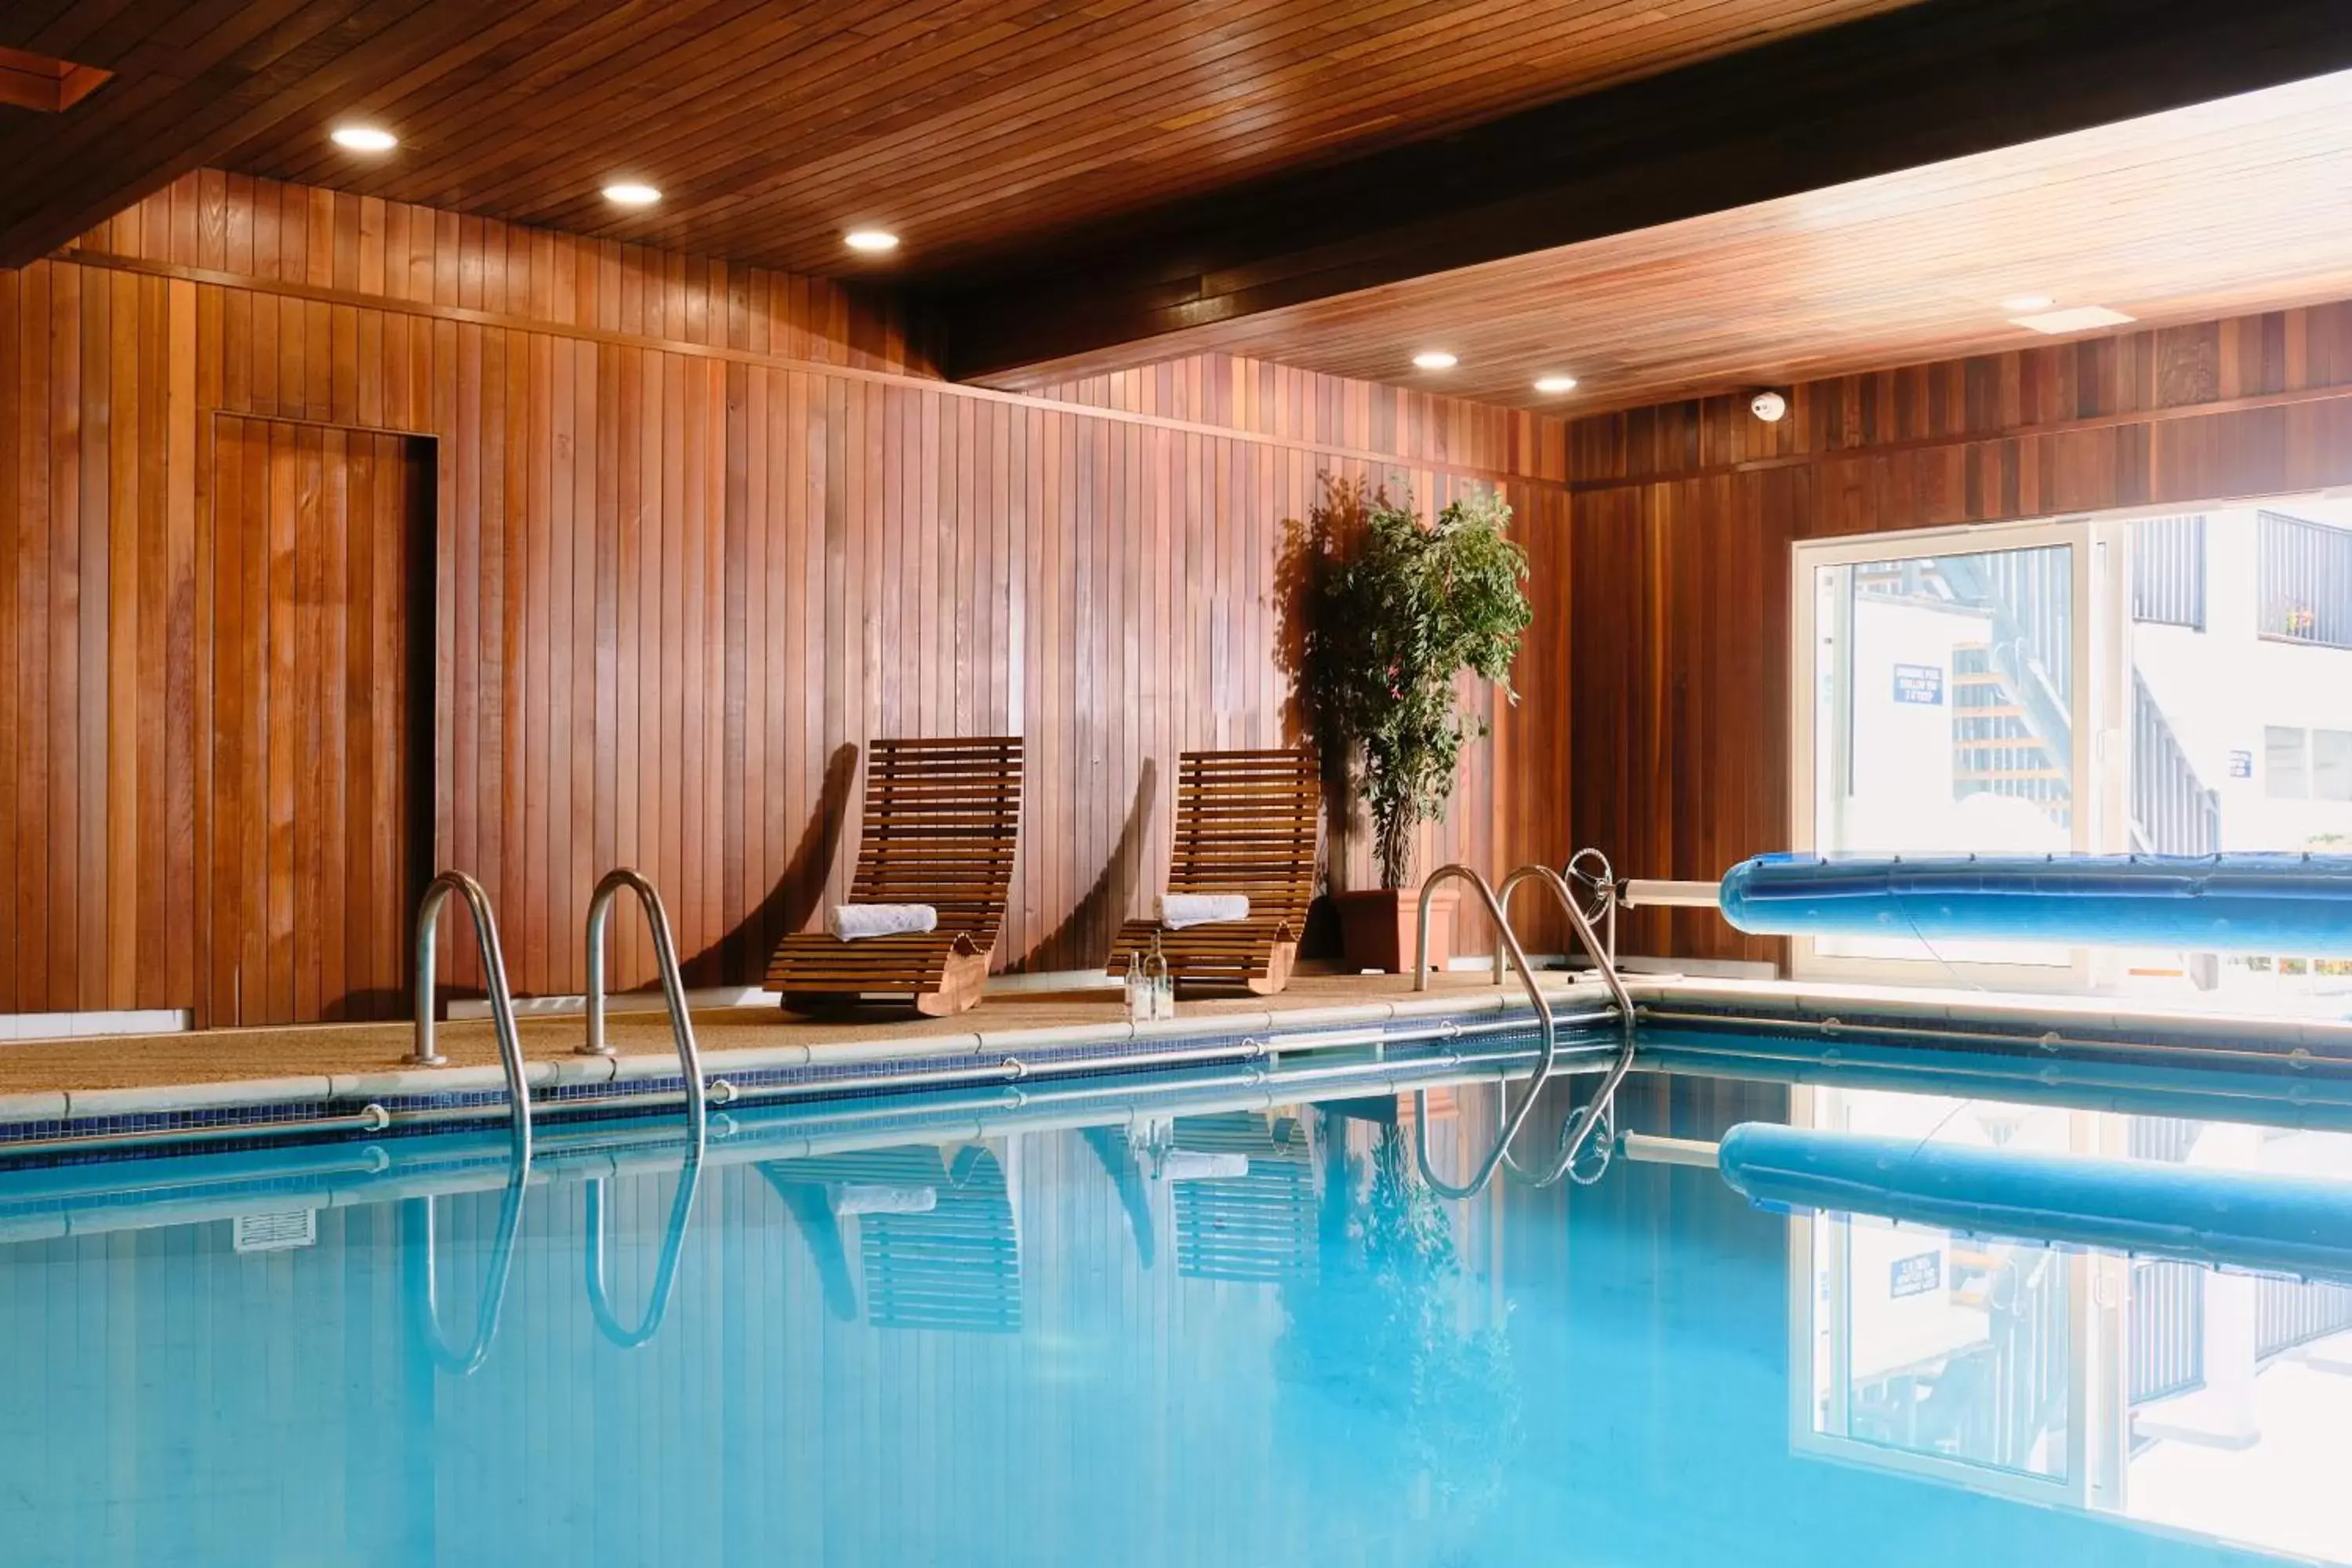 Swimming Pool in The Kilbirnie Hotel